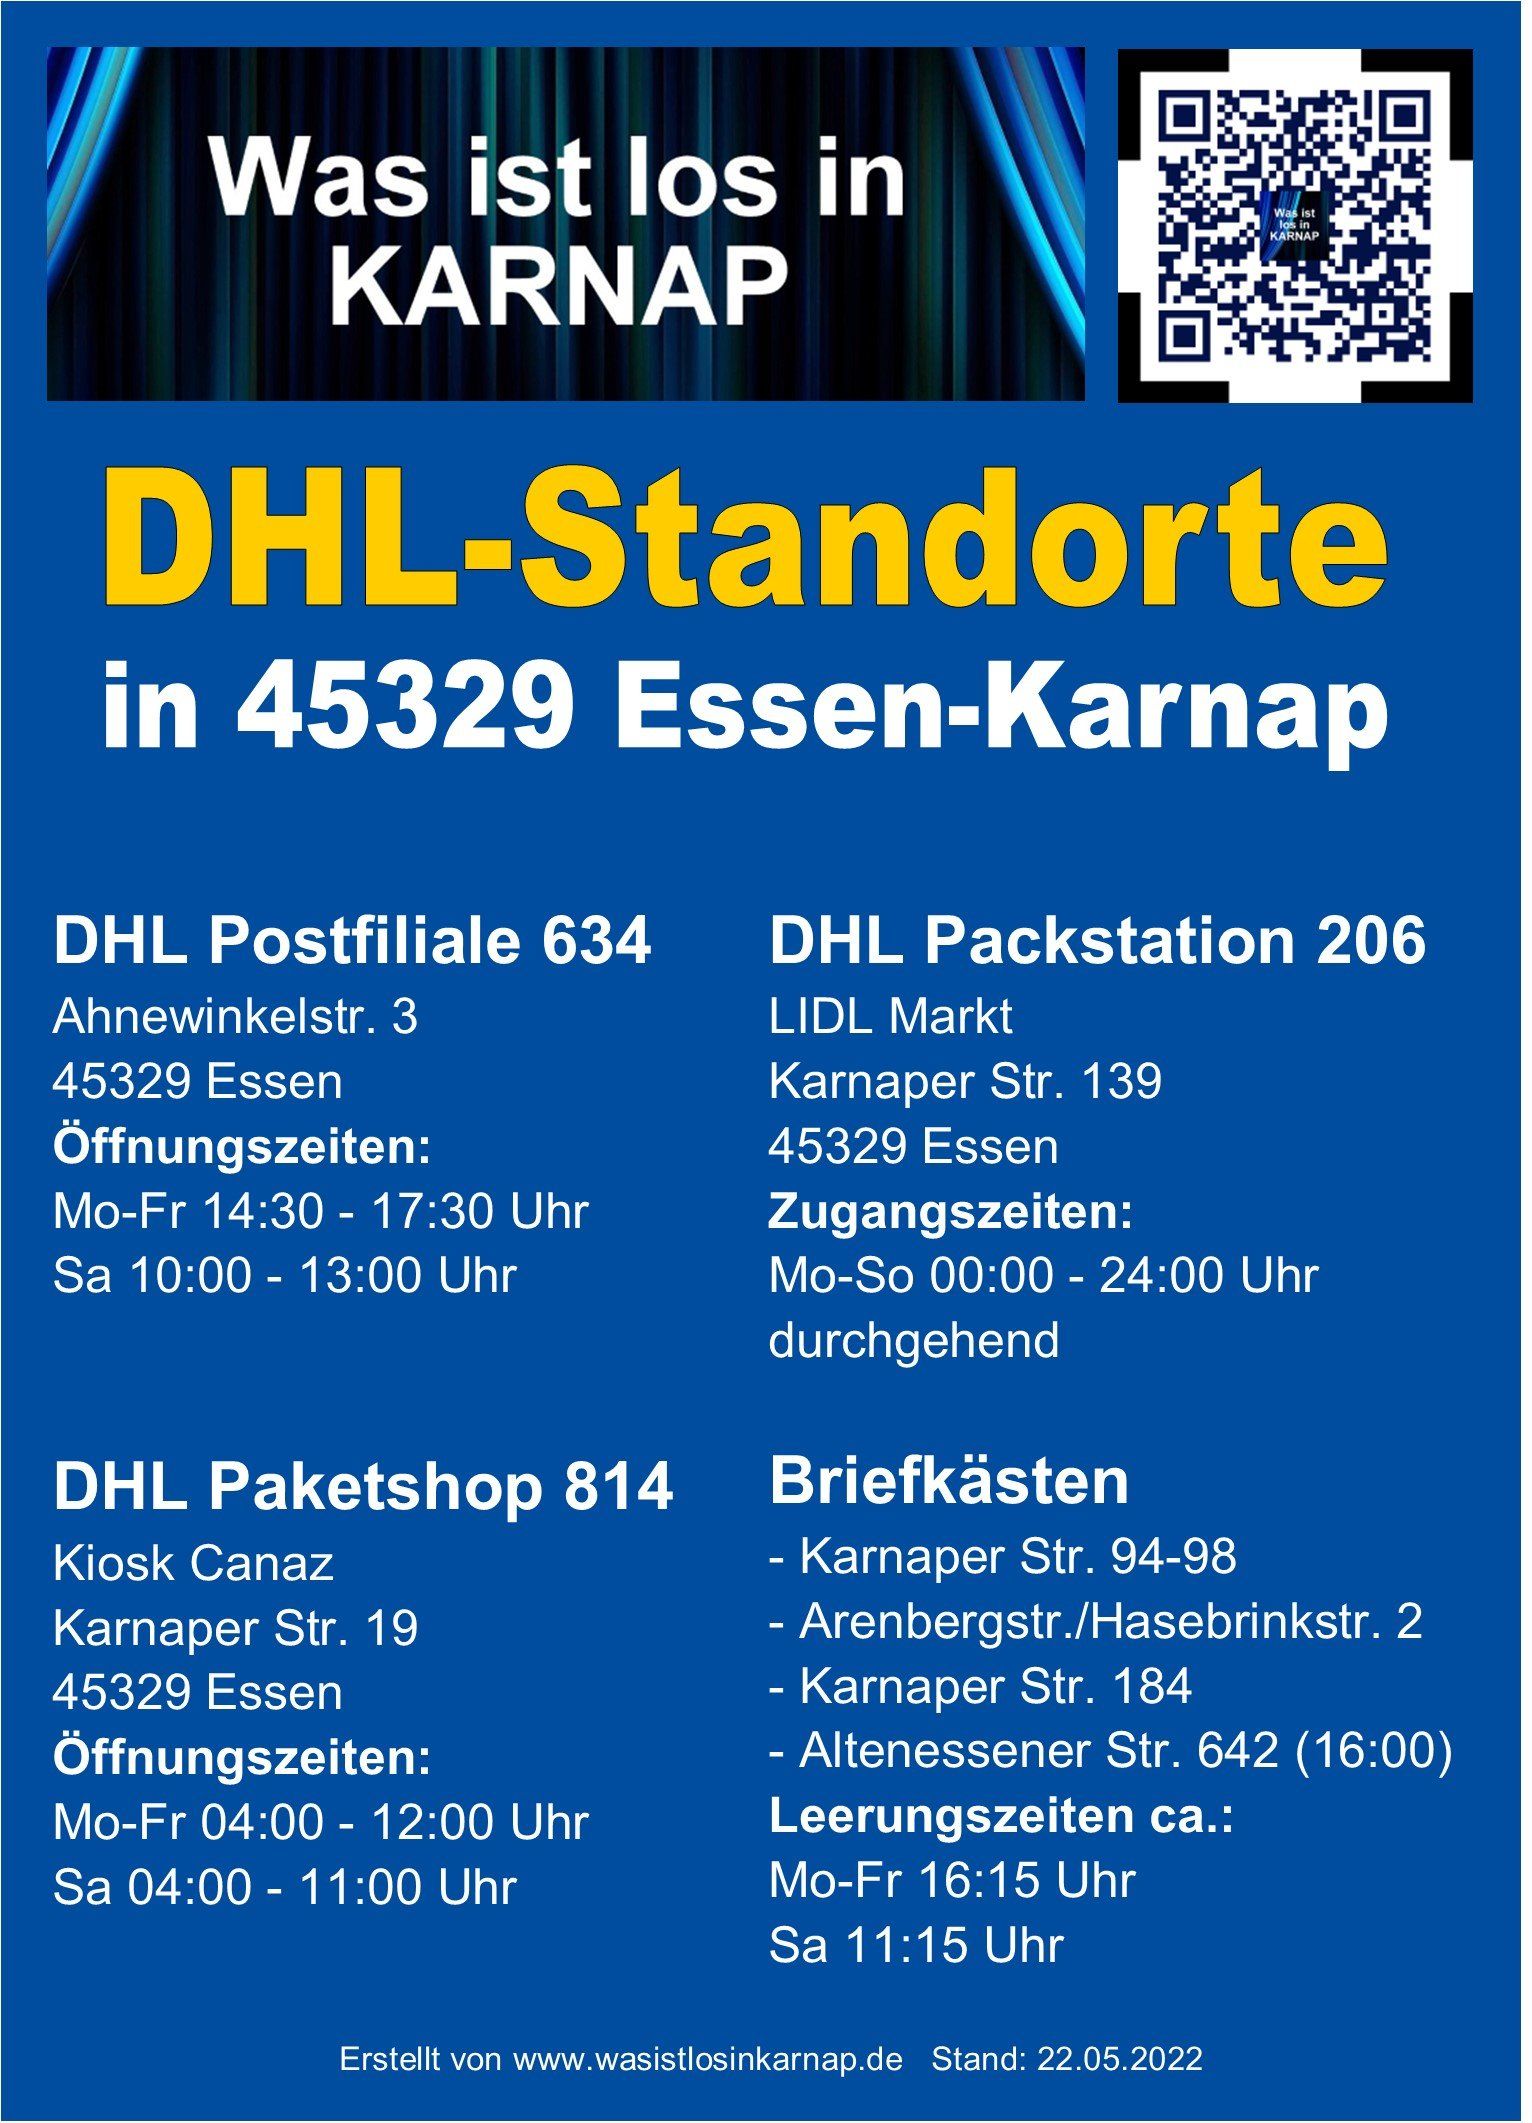 DHL-Standorte in 45329 Essen-Karnap